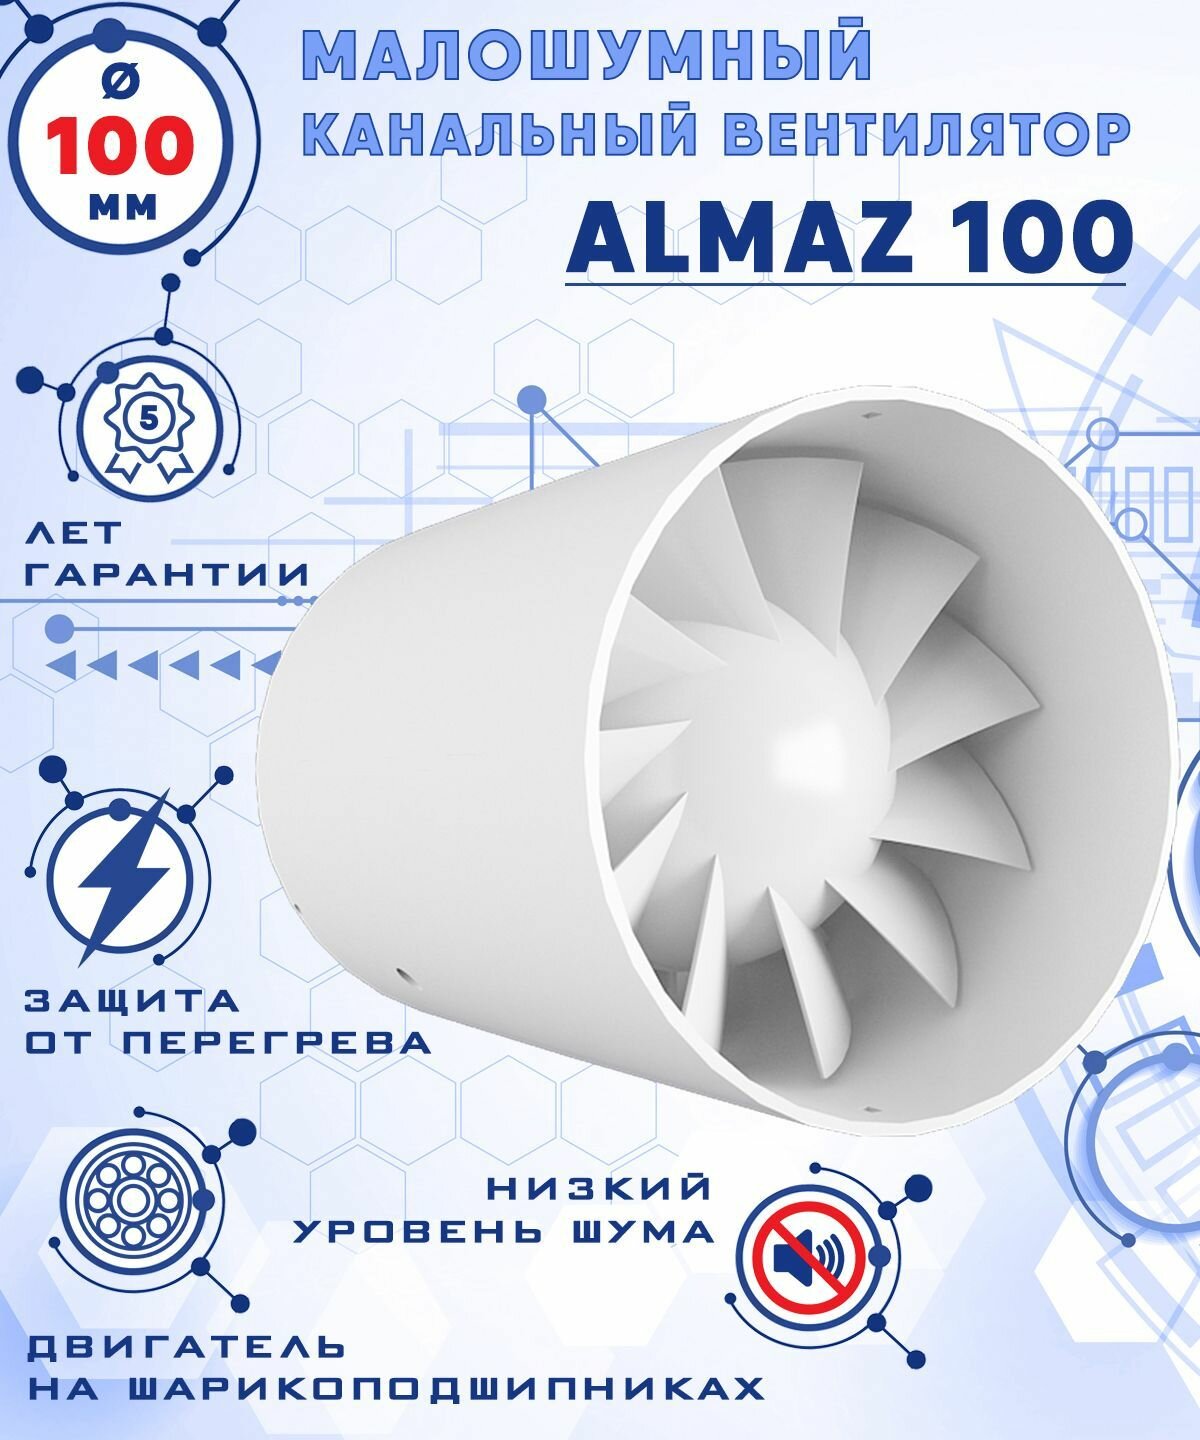 ALMAZ 100 осевой канальный 100 куб. м/ч. малошумный 25 Дб вентилятор на шарикоподшипниках энергоэффективный 8 Вт диаметр 100 мм ZERNBERG